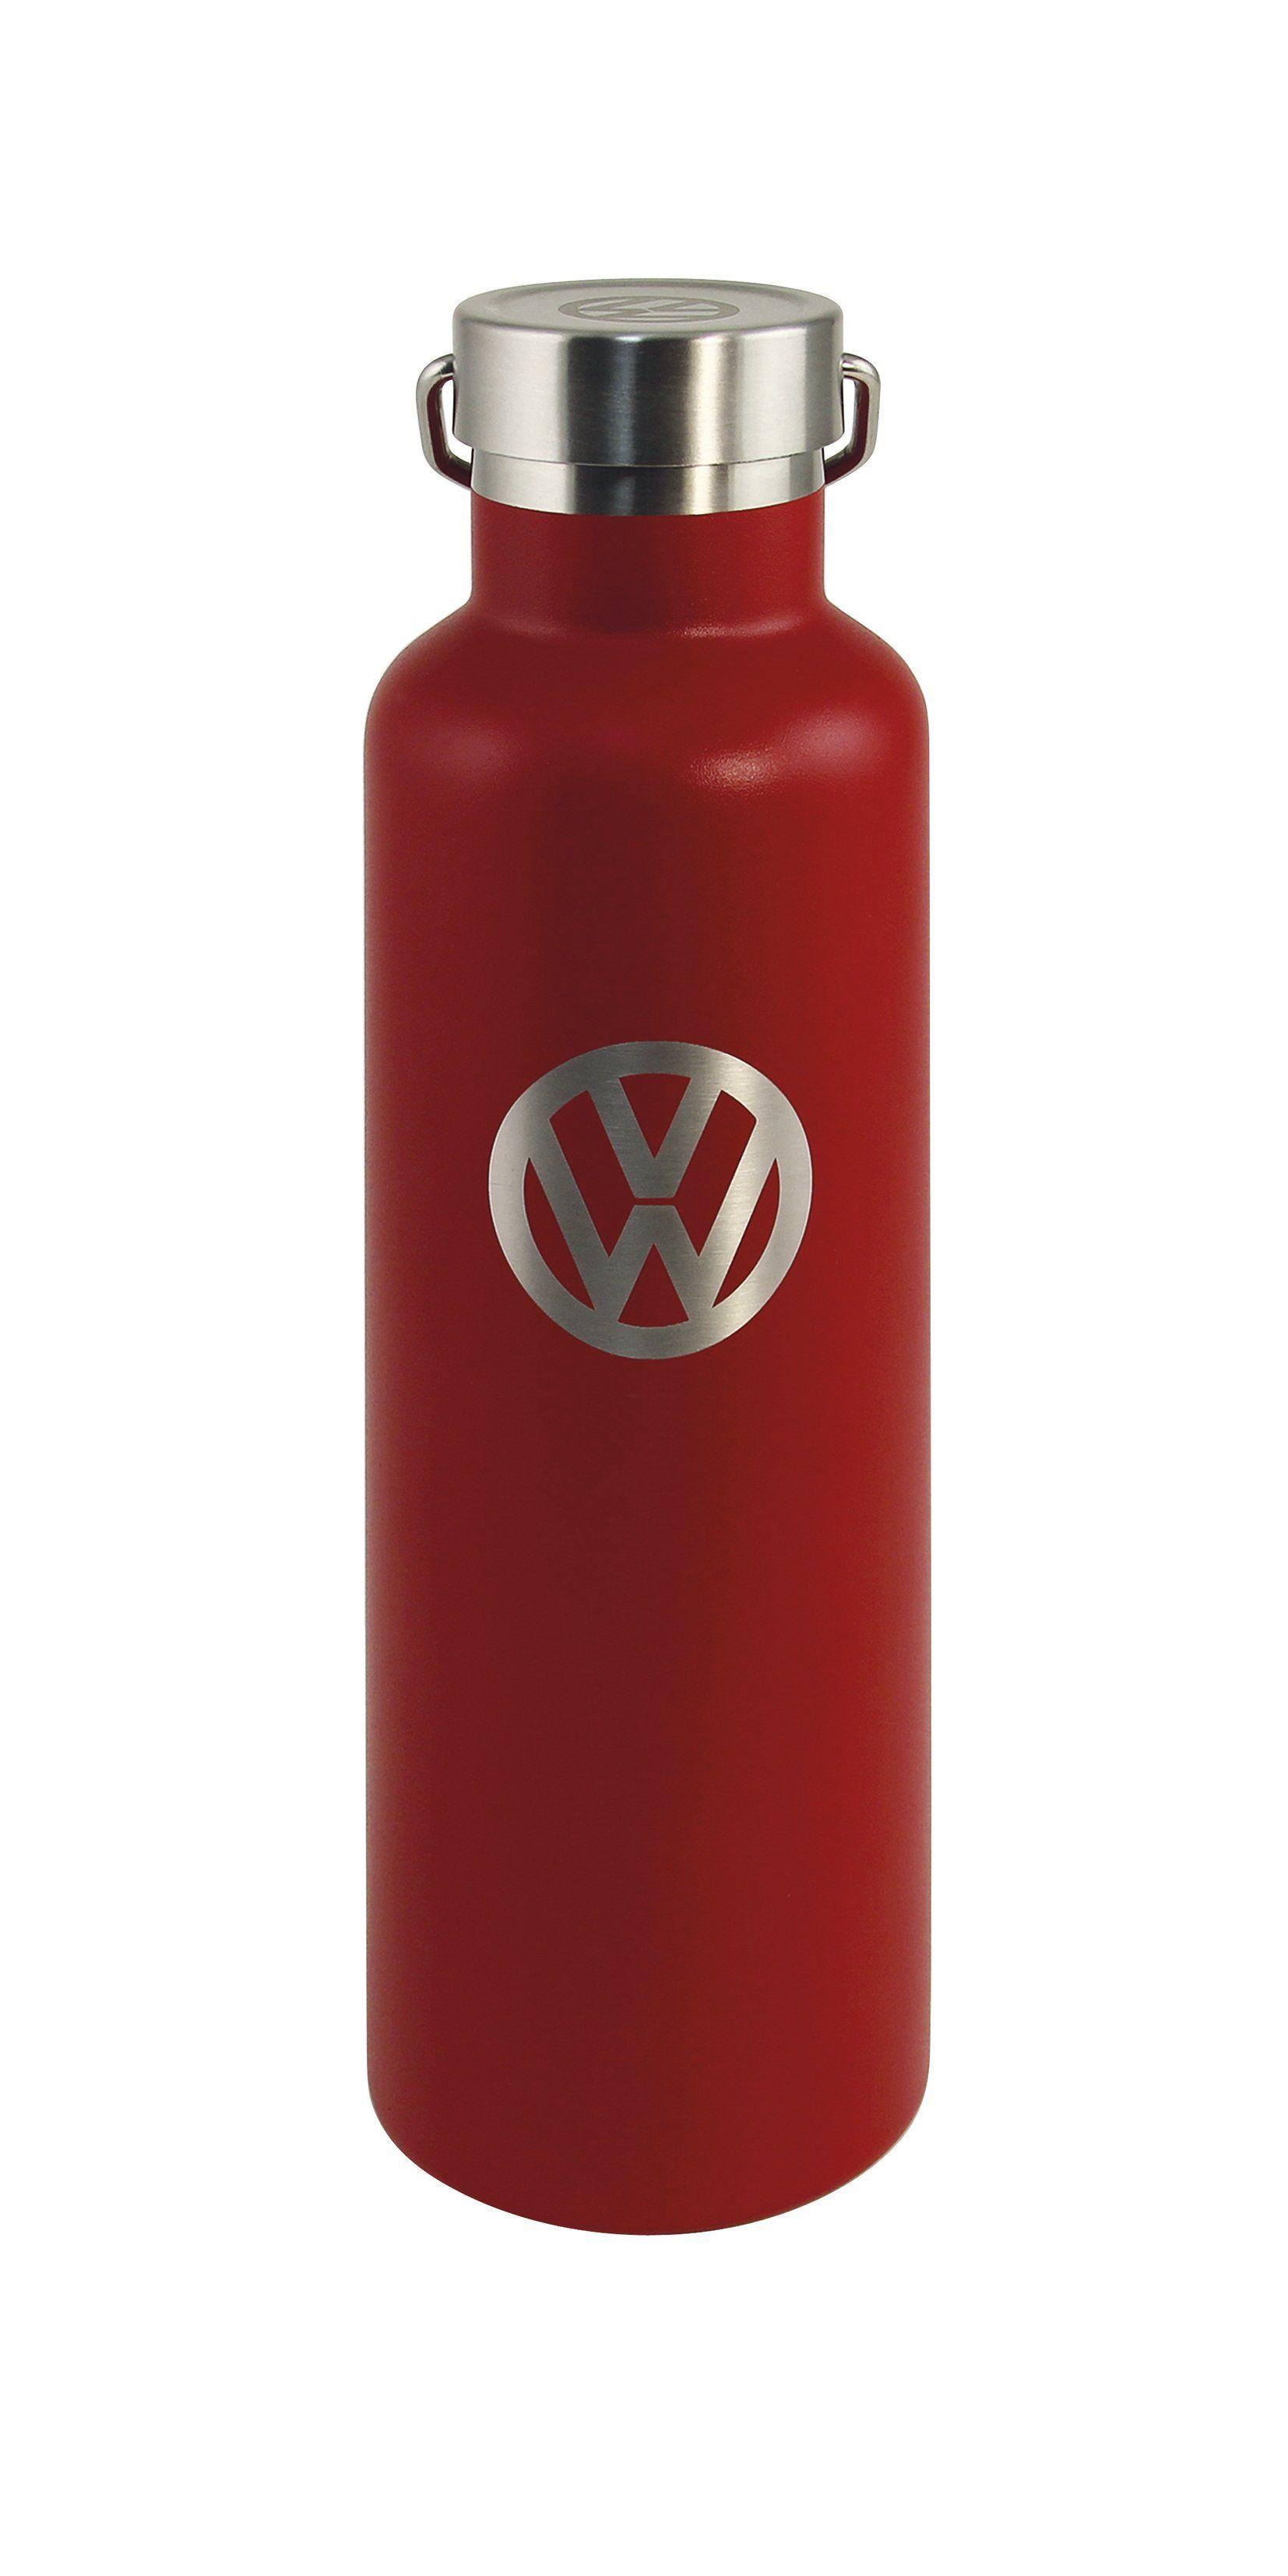 Red Volkswagen Logo - Volkswagen Thermos Drinking Bottle 25 fl.oz. with VW Logo